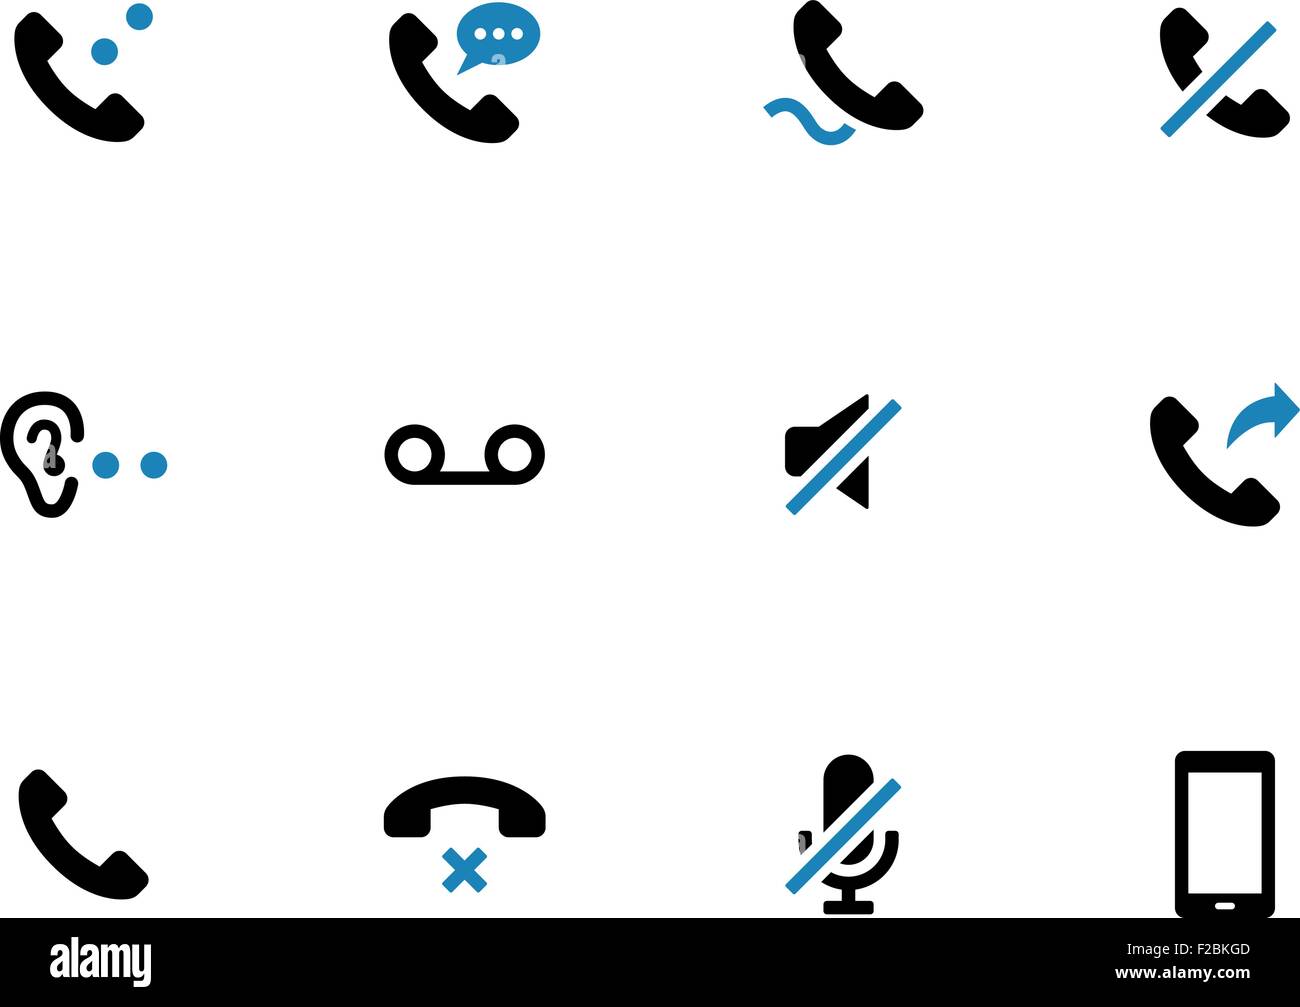 Telefono cellulare telefono bicromia icone su sfondo bianco. Illustrazione Vettoriale